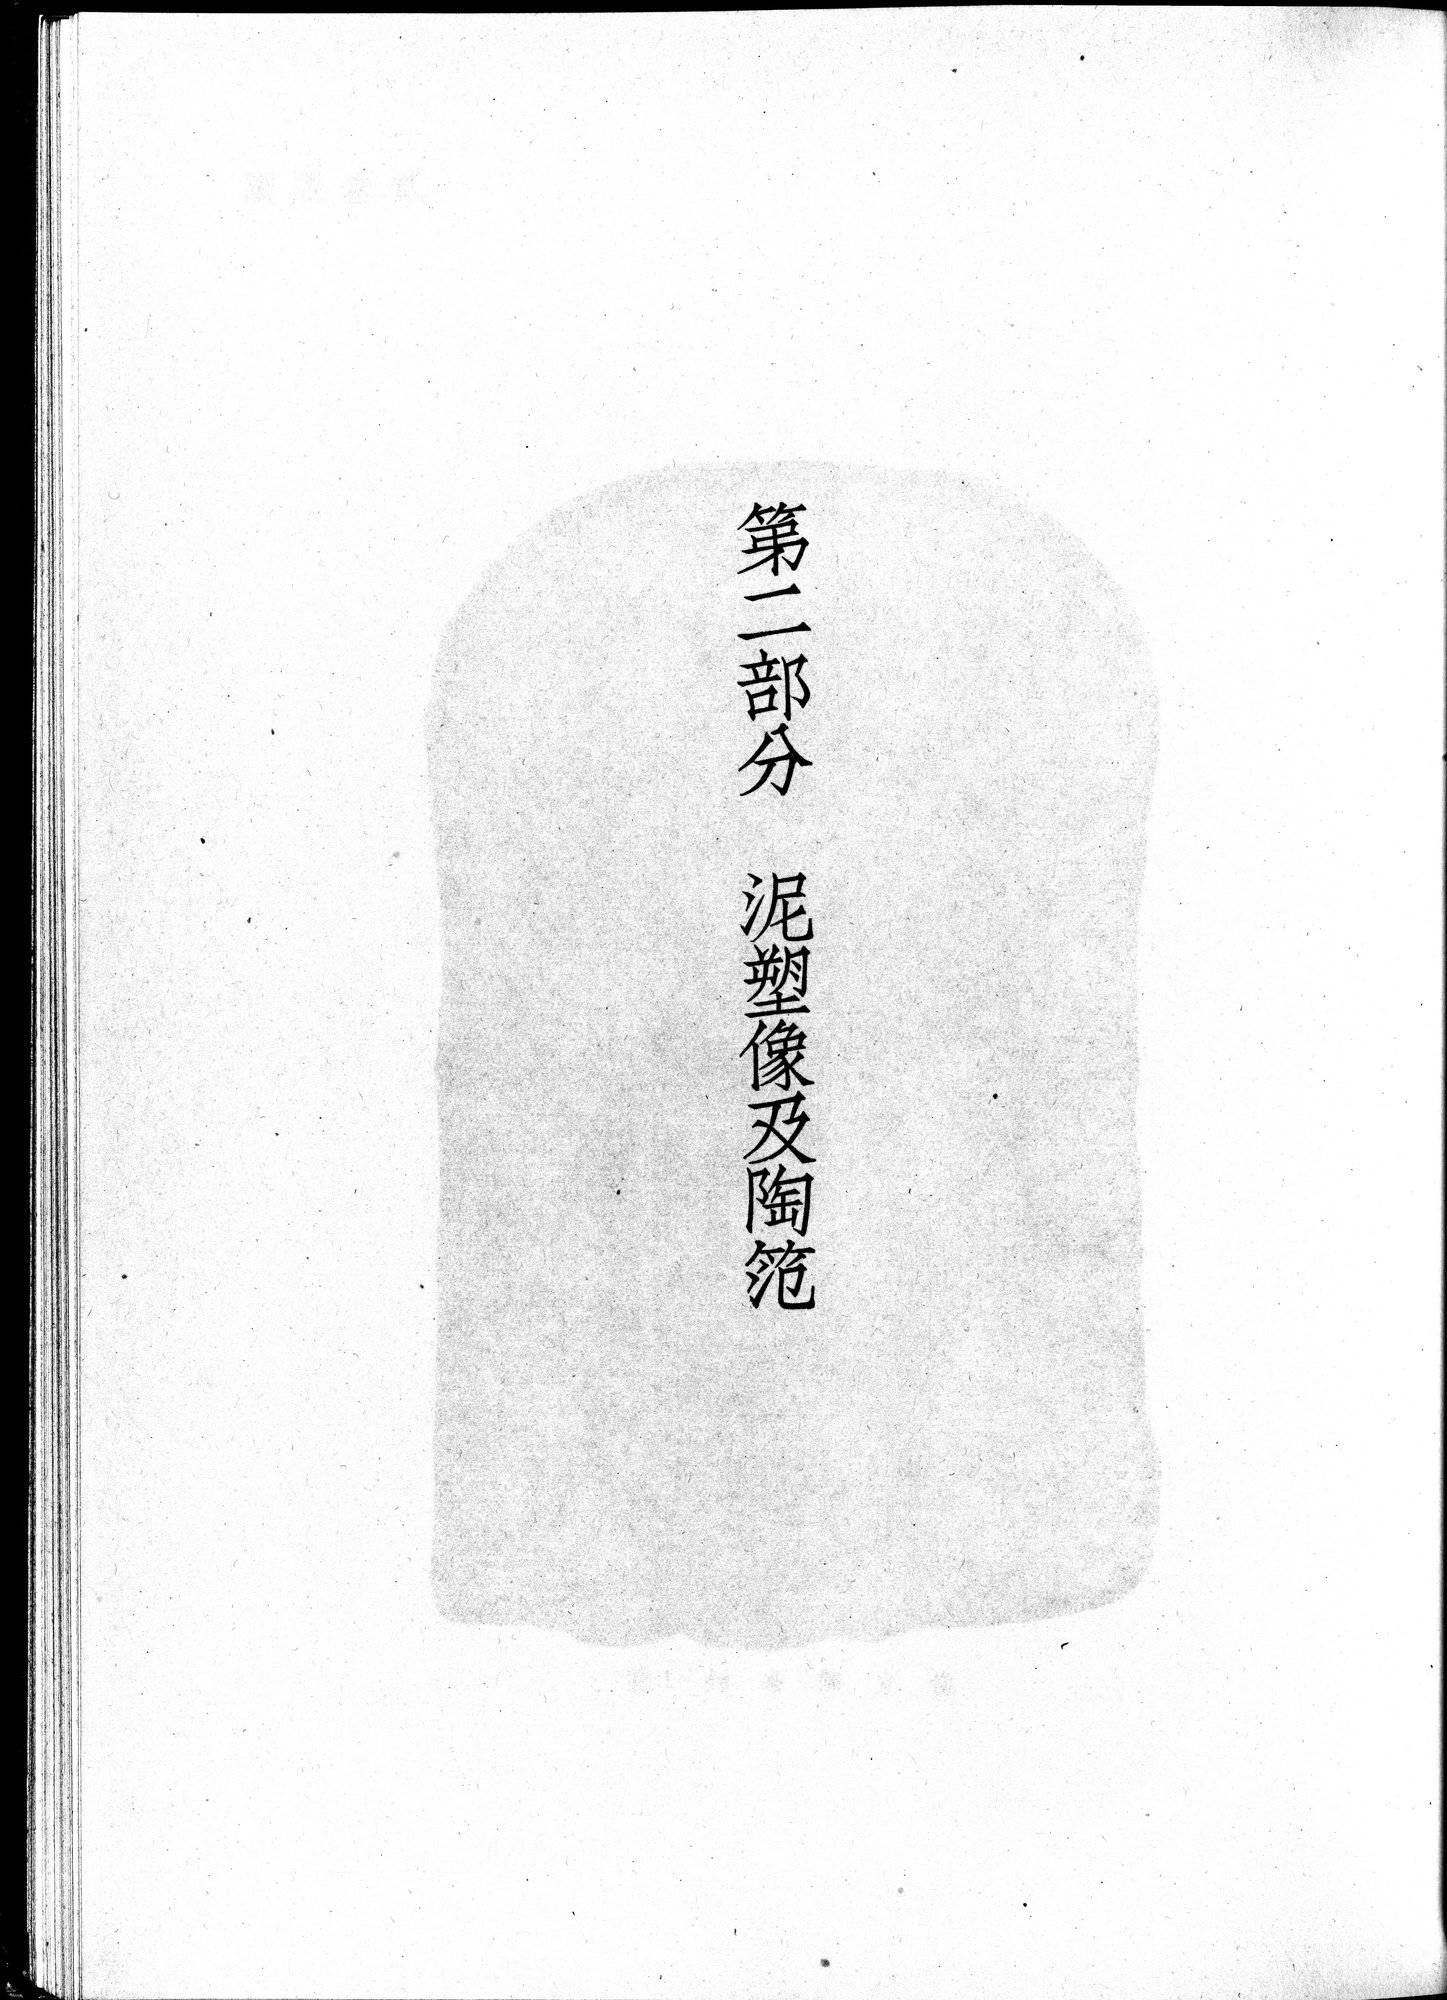 塔里木盆地考古記 : vol.1 / 253 ページ（白黒高解像度画像）